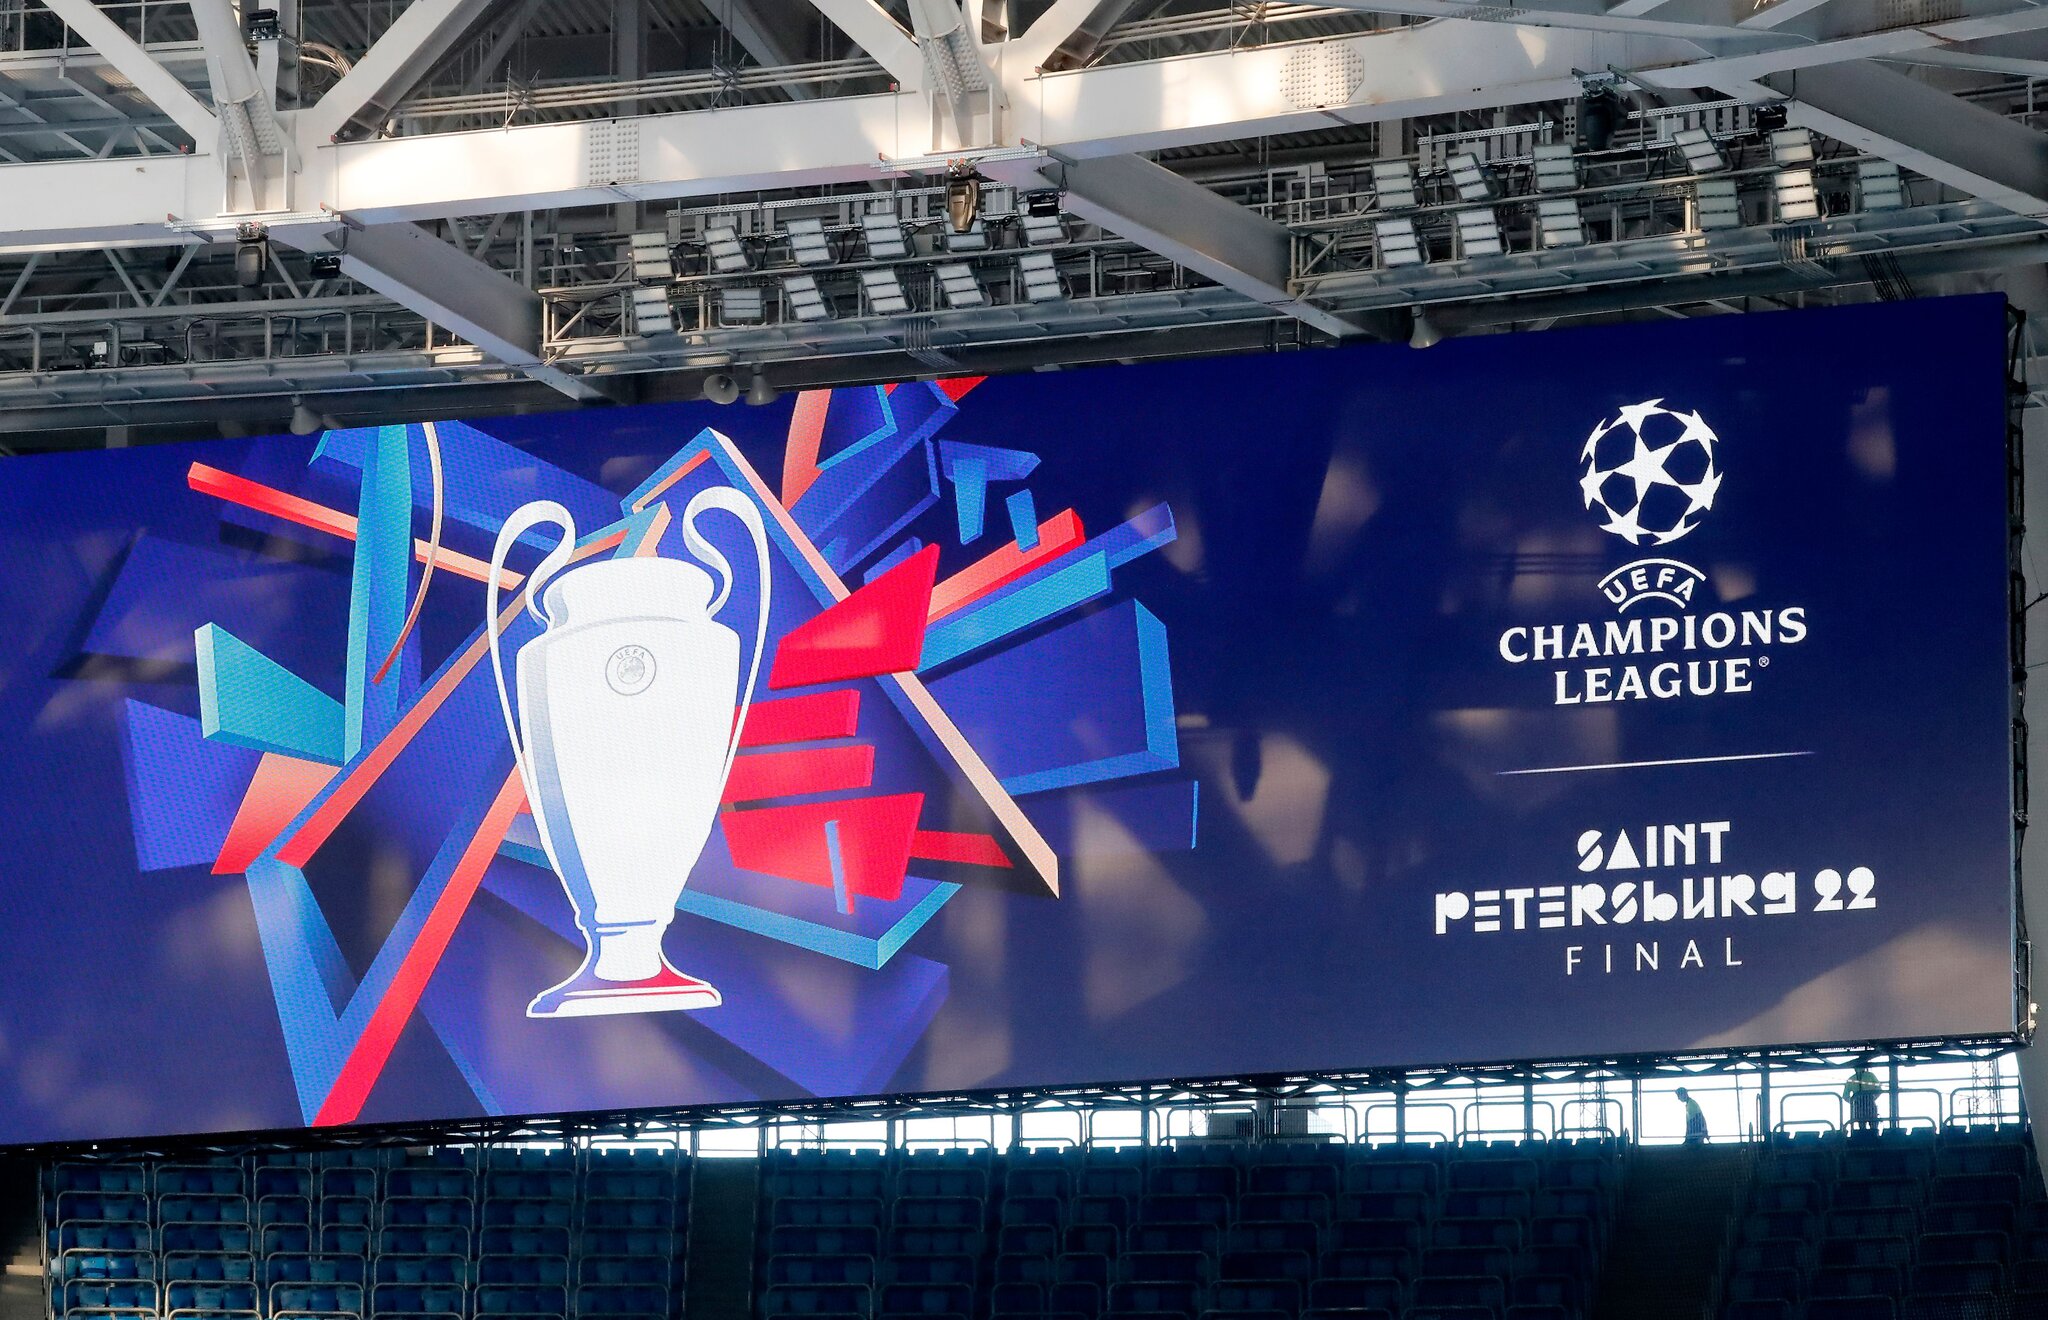 Hiện tại, mới chỉ có trận chung kết Champions League mùa này bị chuyển từ St Peterburg sang Paris